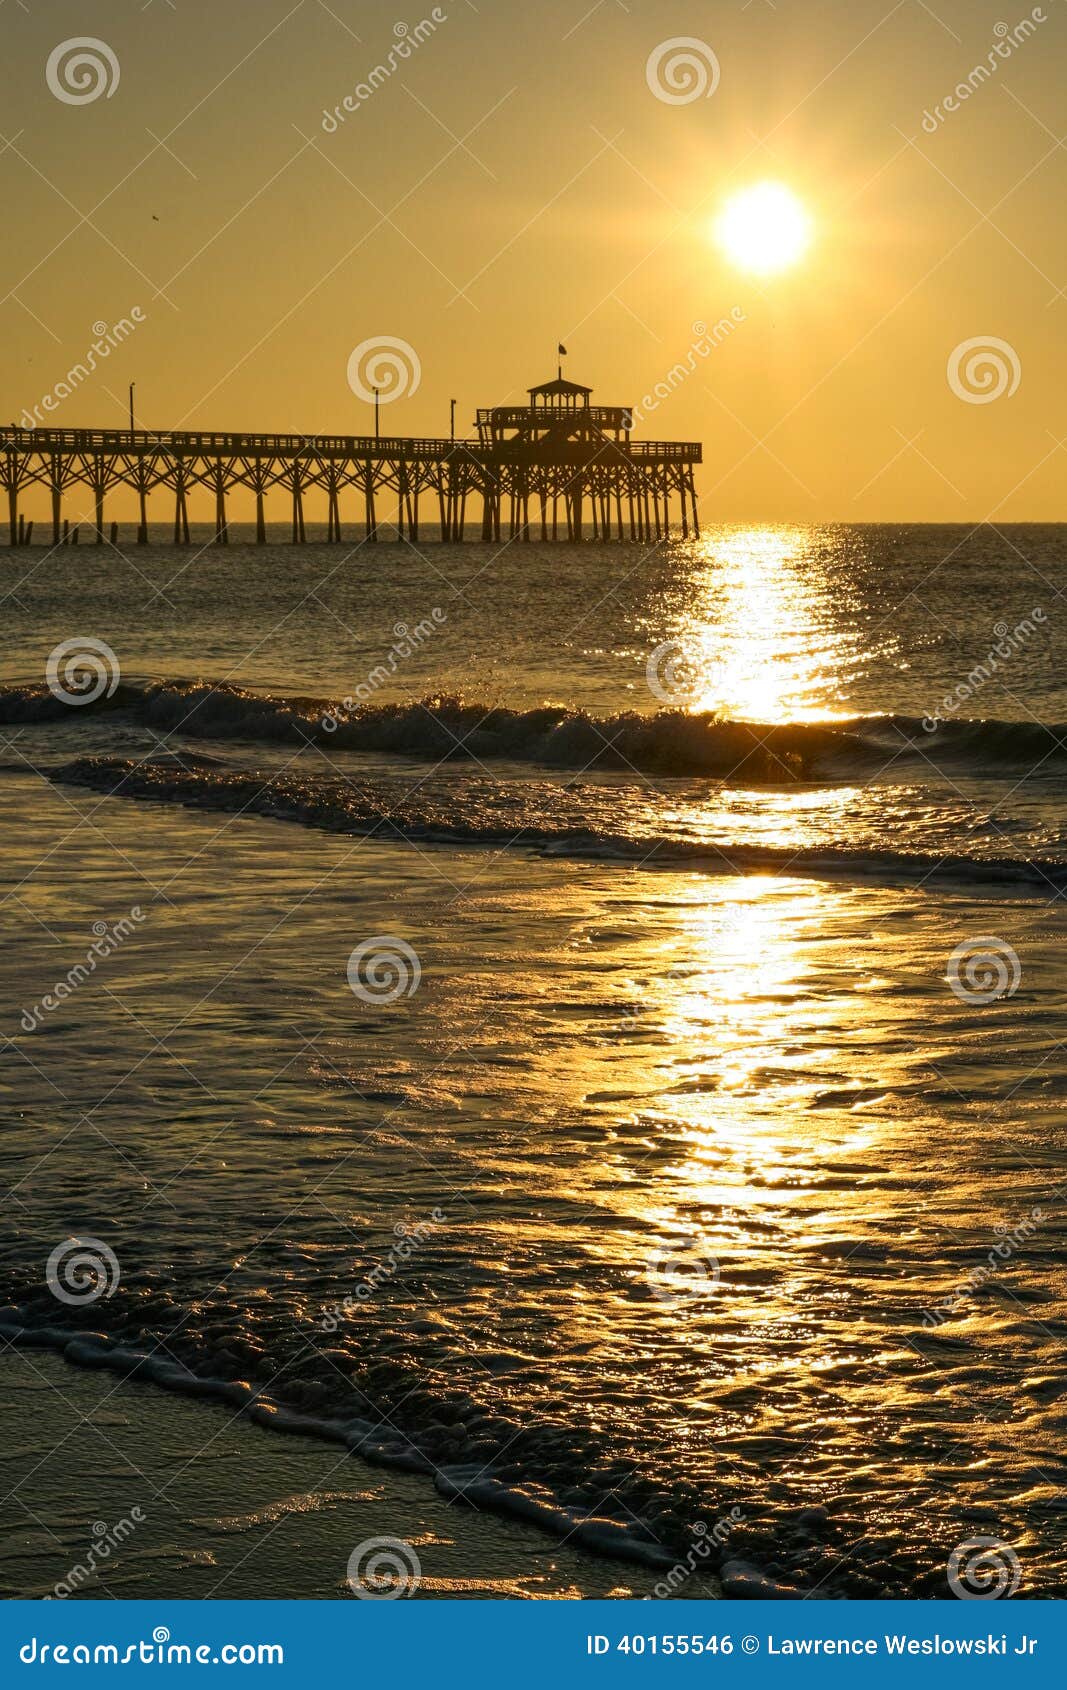 Złotego wschodu słońca gaju mola mirtu Czereśniowa plaża. Piękny złoty wschód słońca nad sławnego punktu zwrotnego gaju oceanu plaży Czereśniowym molem, odbija z wody w mirt plaży, Południowa Karolina